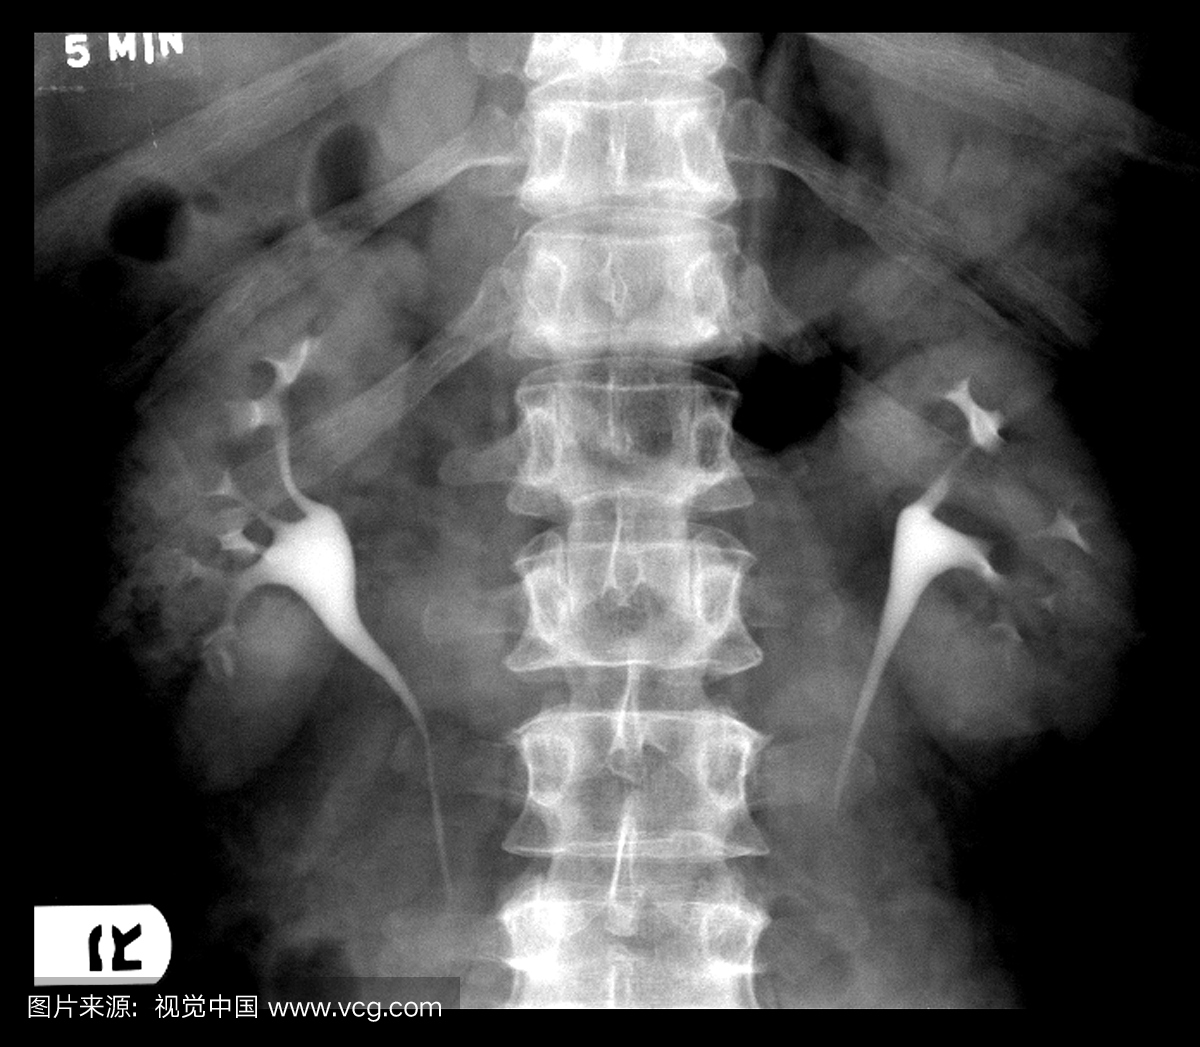 来自IVP(静脉注射白血病)腹部的正面X射线照射